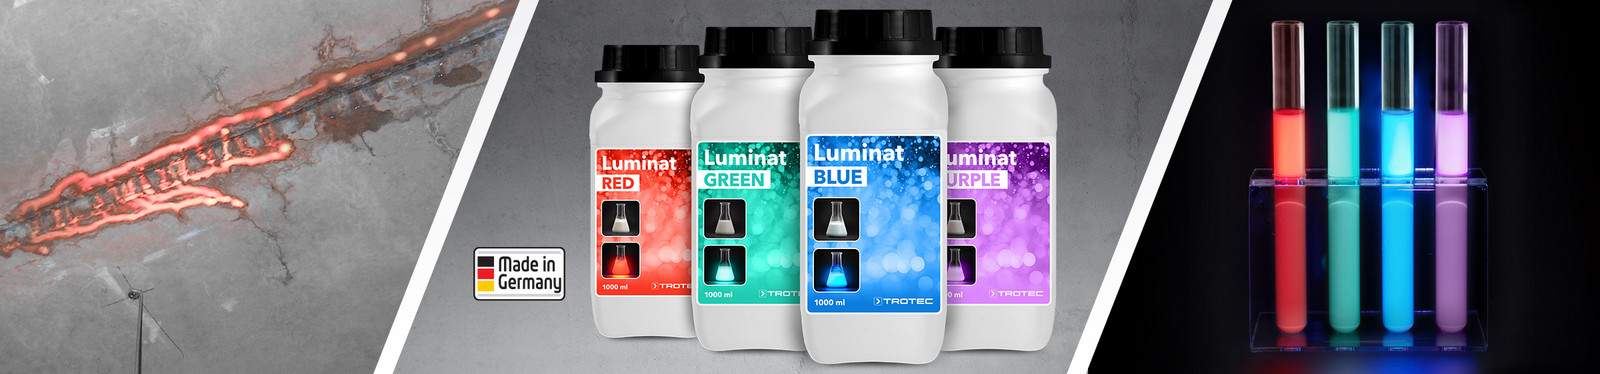 Leuchtfarbstoffe der Trotec Luminat-Serie zur UV-Fluoreszenzanregung bei der Detektion von Leckstellen